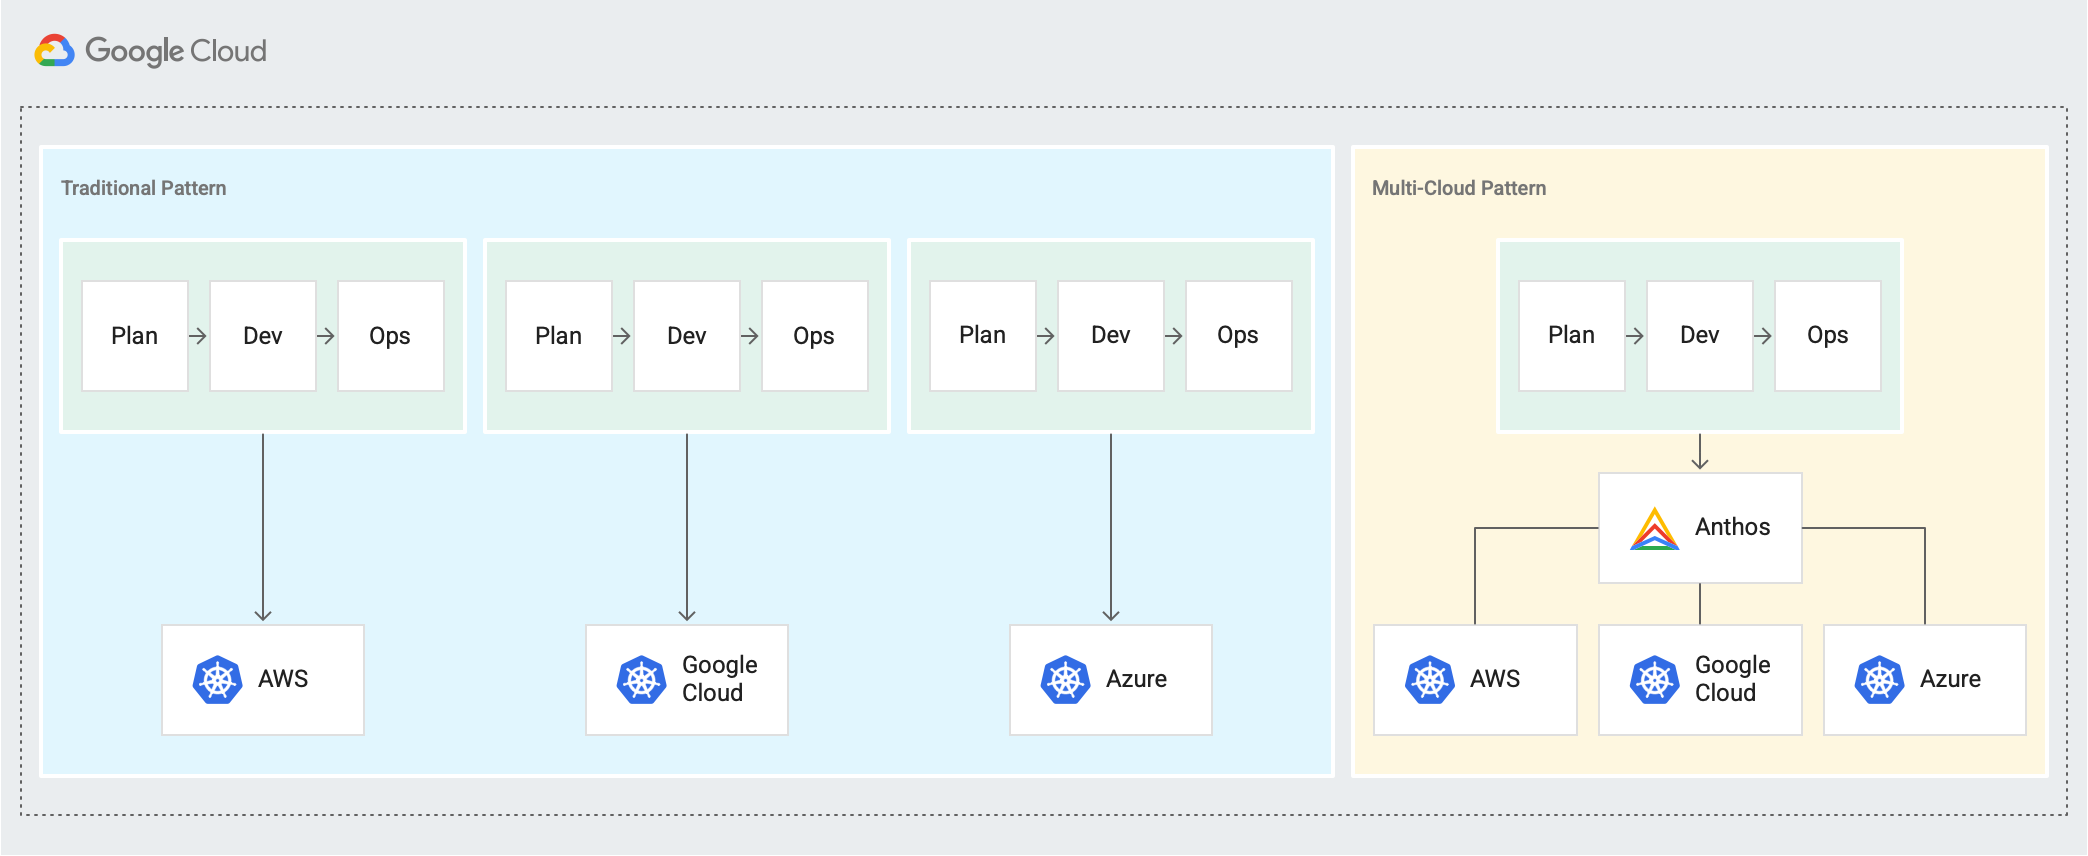 展示了 AWS、Google Cloud 和 Azure 单独的“规划 → 开发 → 运维”周期的传统模式和新的多云模式，其中“规划 → 开发 → 运维”周期通过 Anthos 关联。